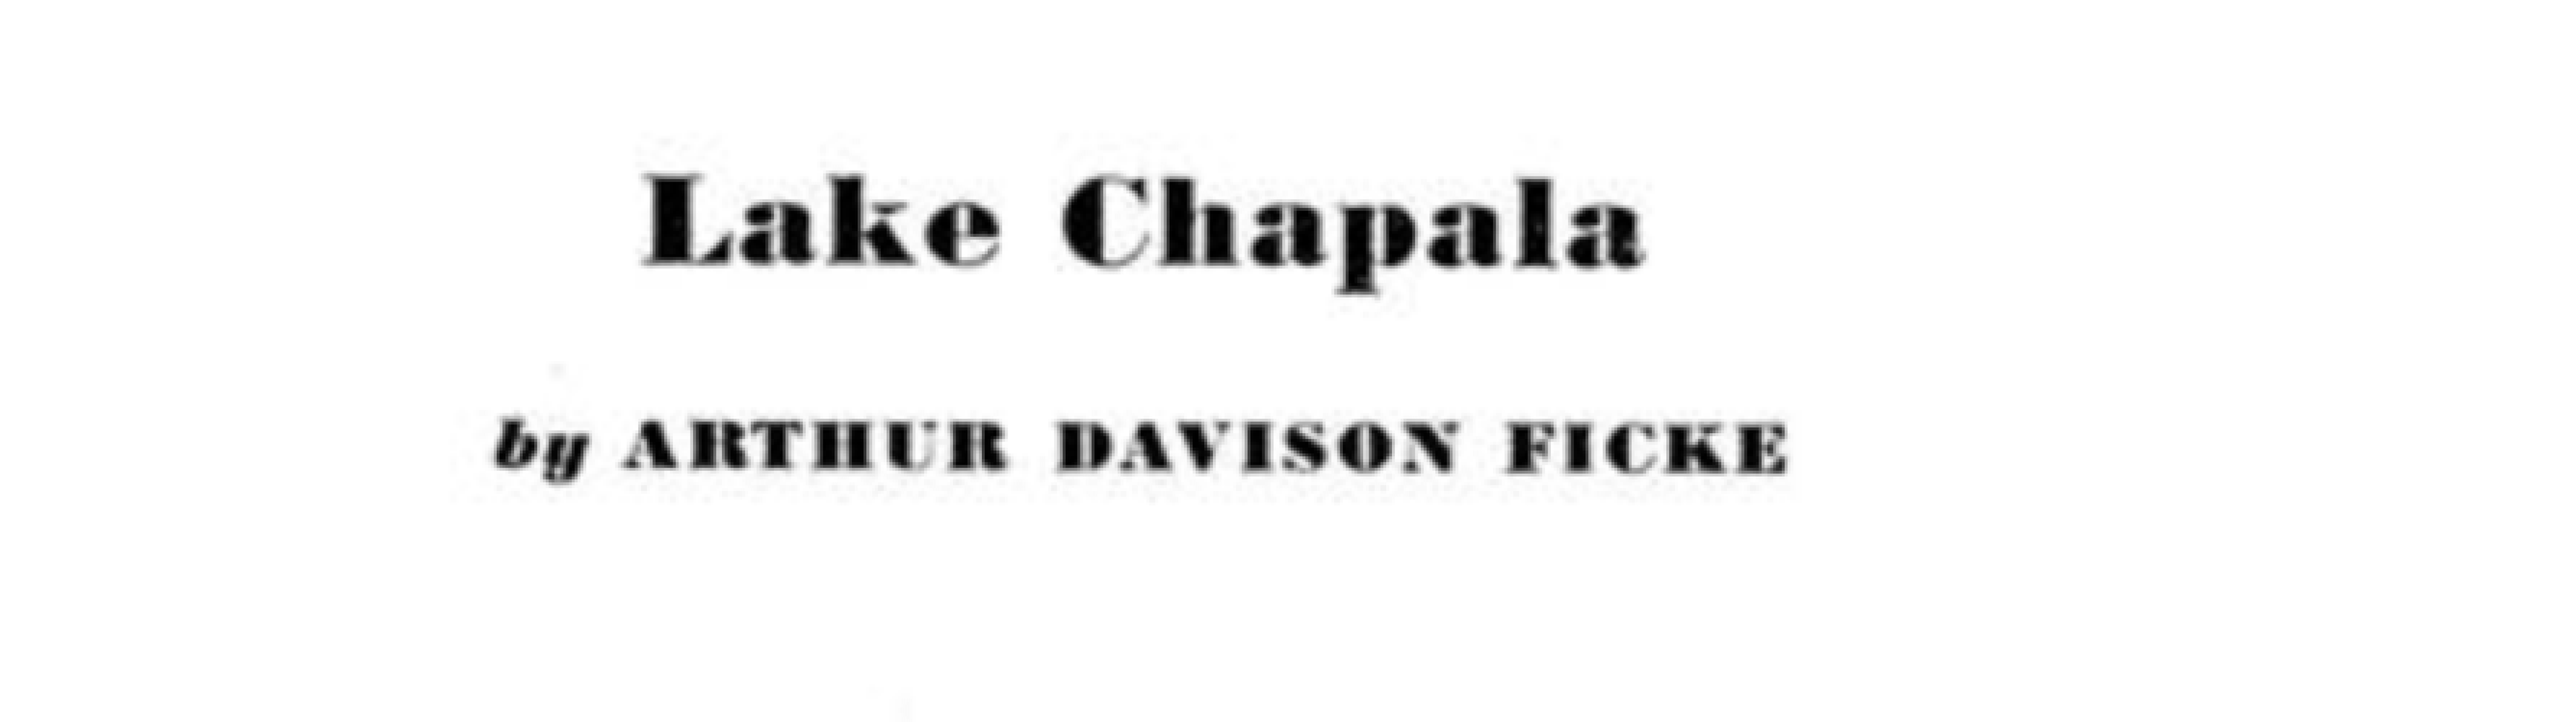 Lake Chapala Esquire MAY 1936